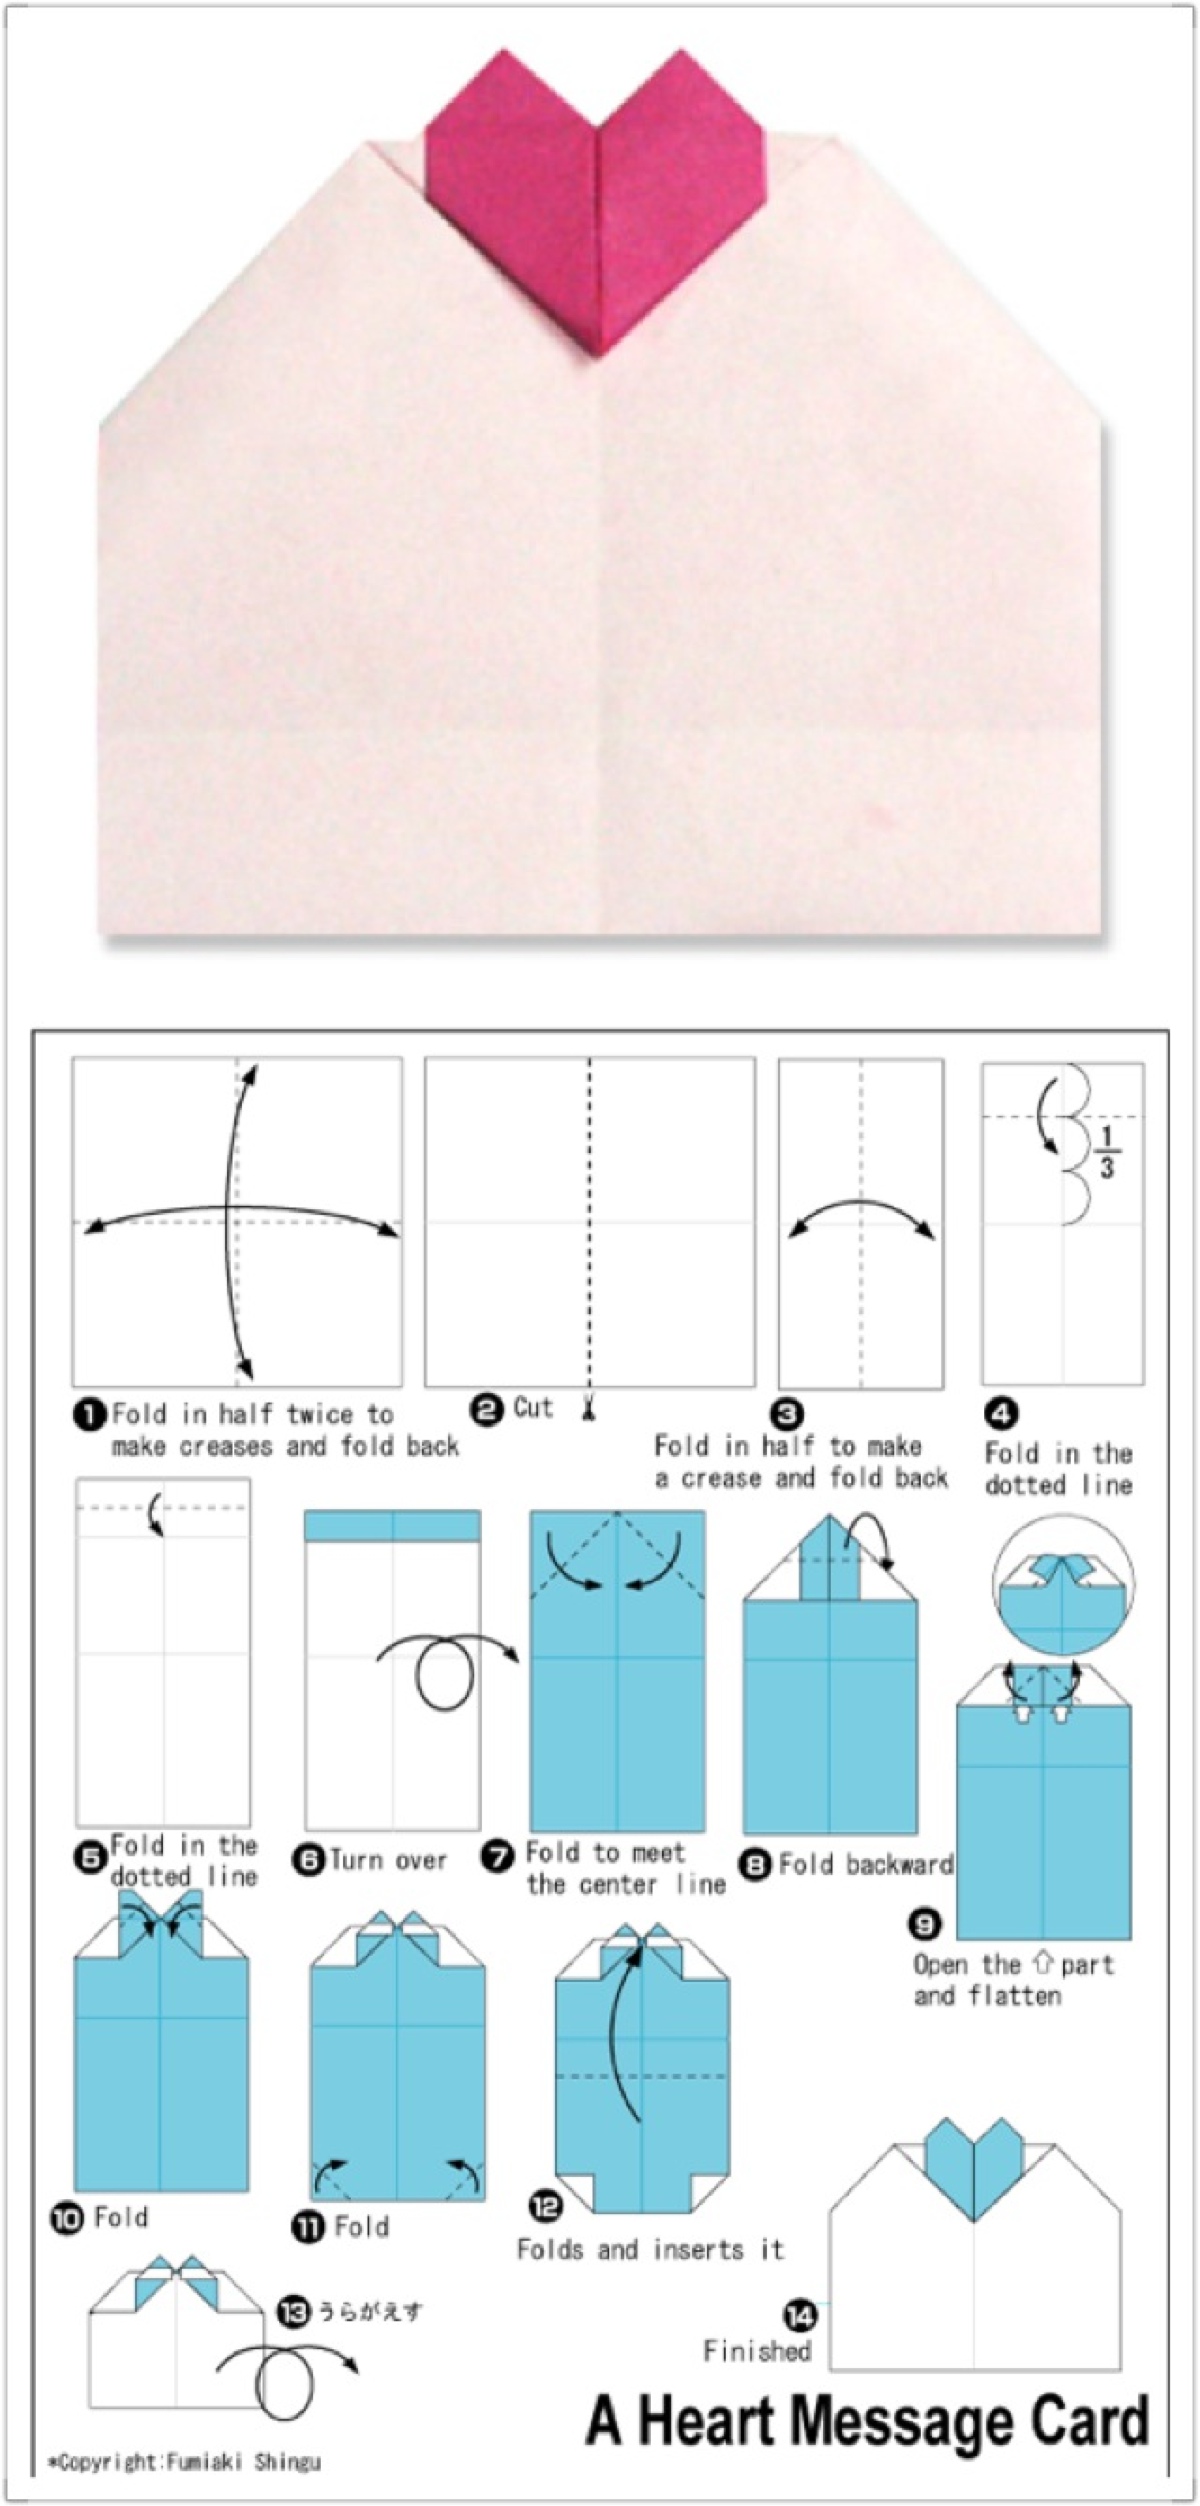 手工折纸步骤文字图片